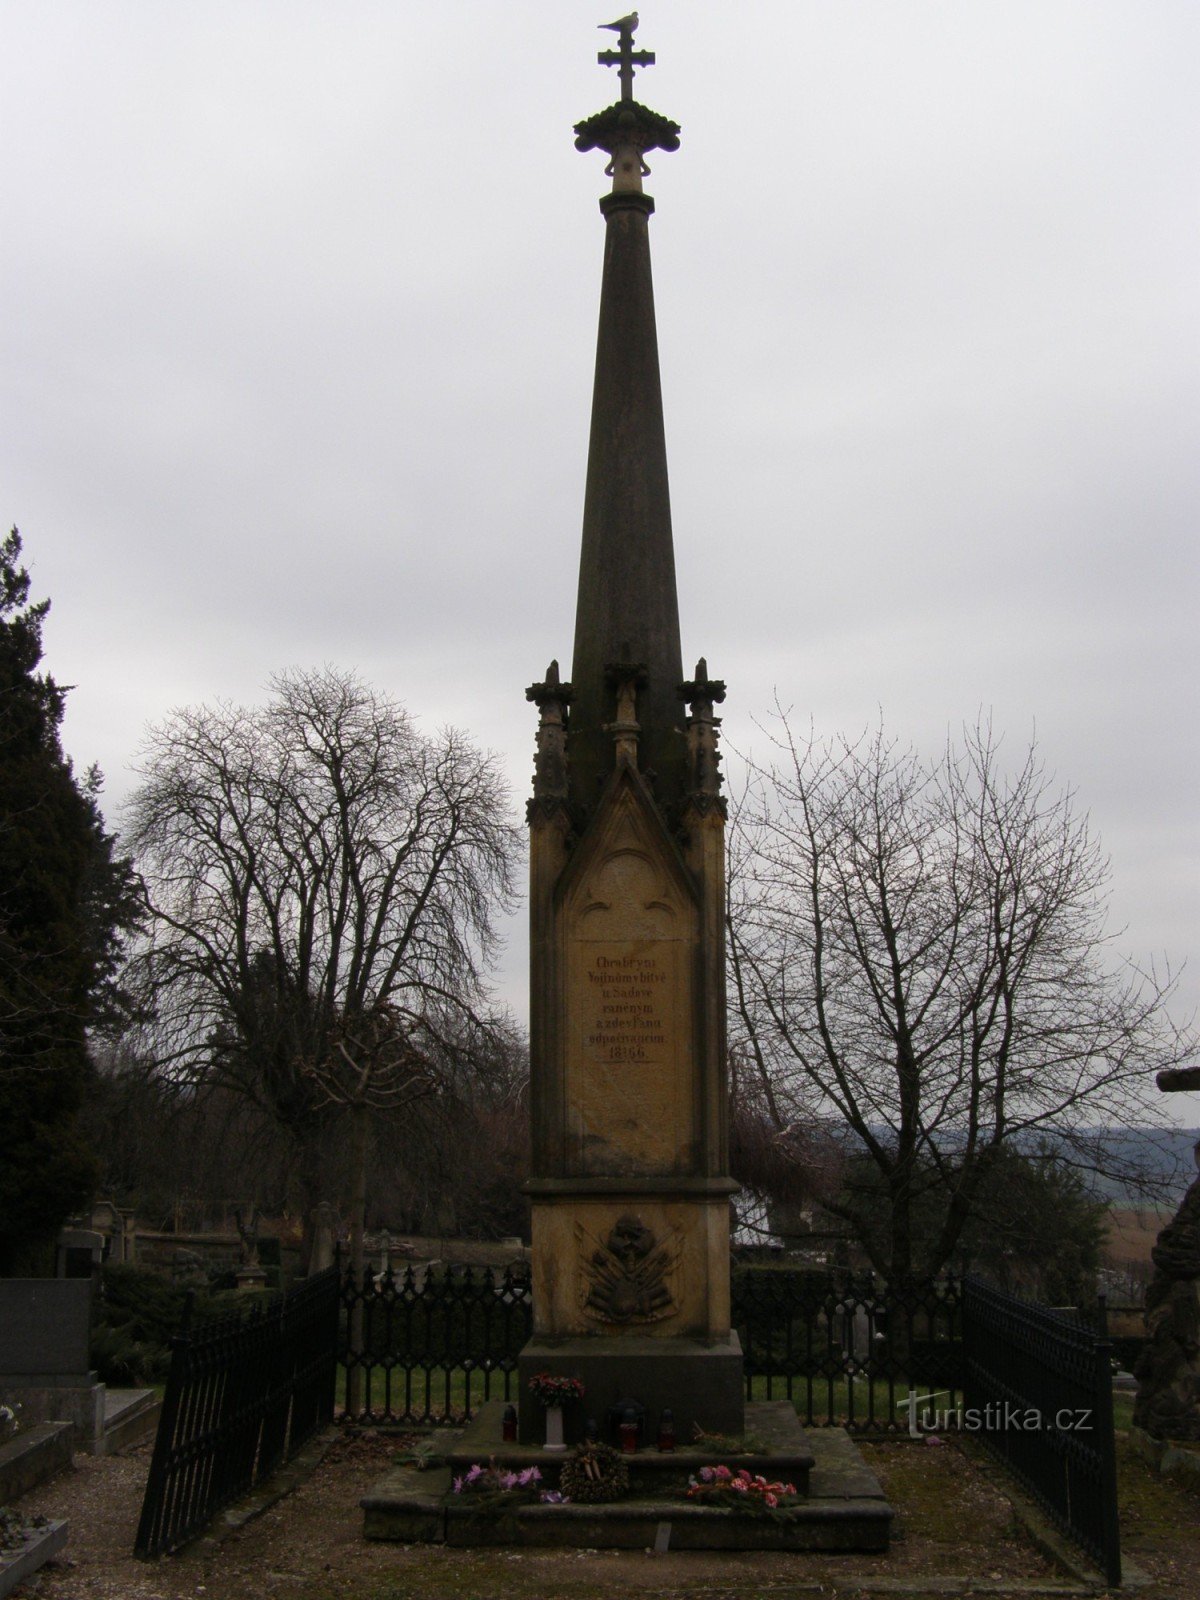 Gothard - monumento alle vittime della guerra prussiano-austriaca